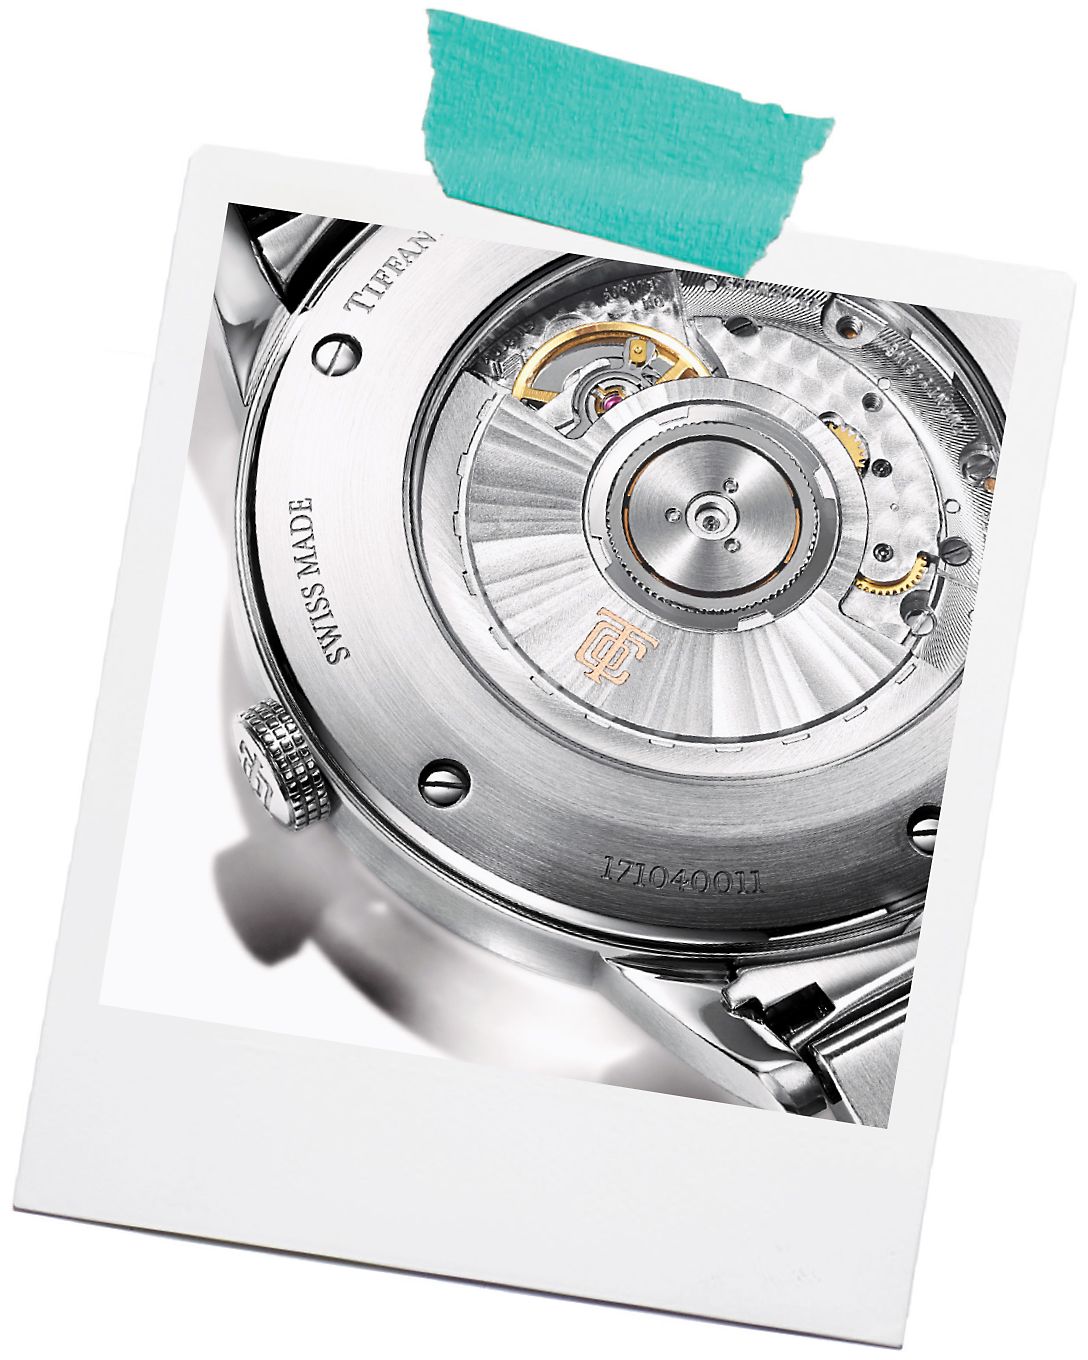 Entdecken Sie die Tiffany & Co. Uhrenpflege